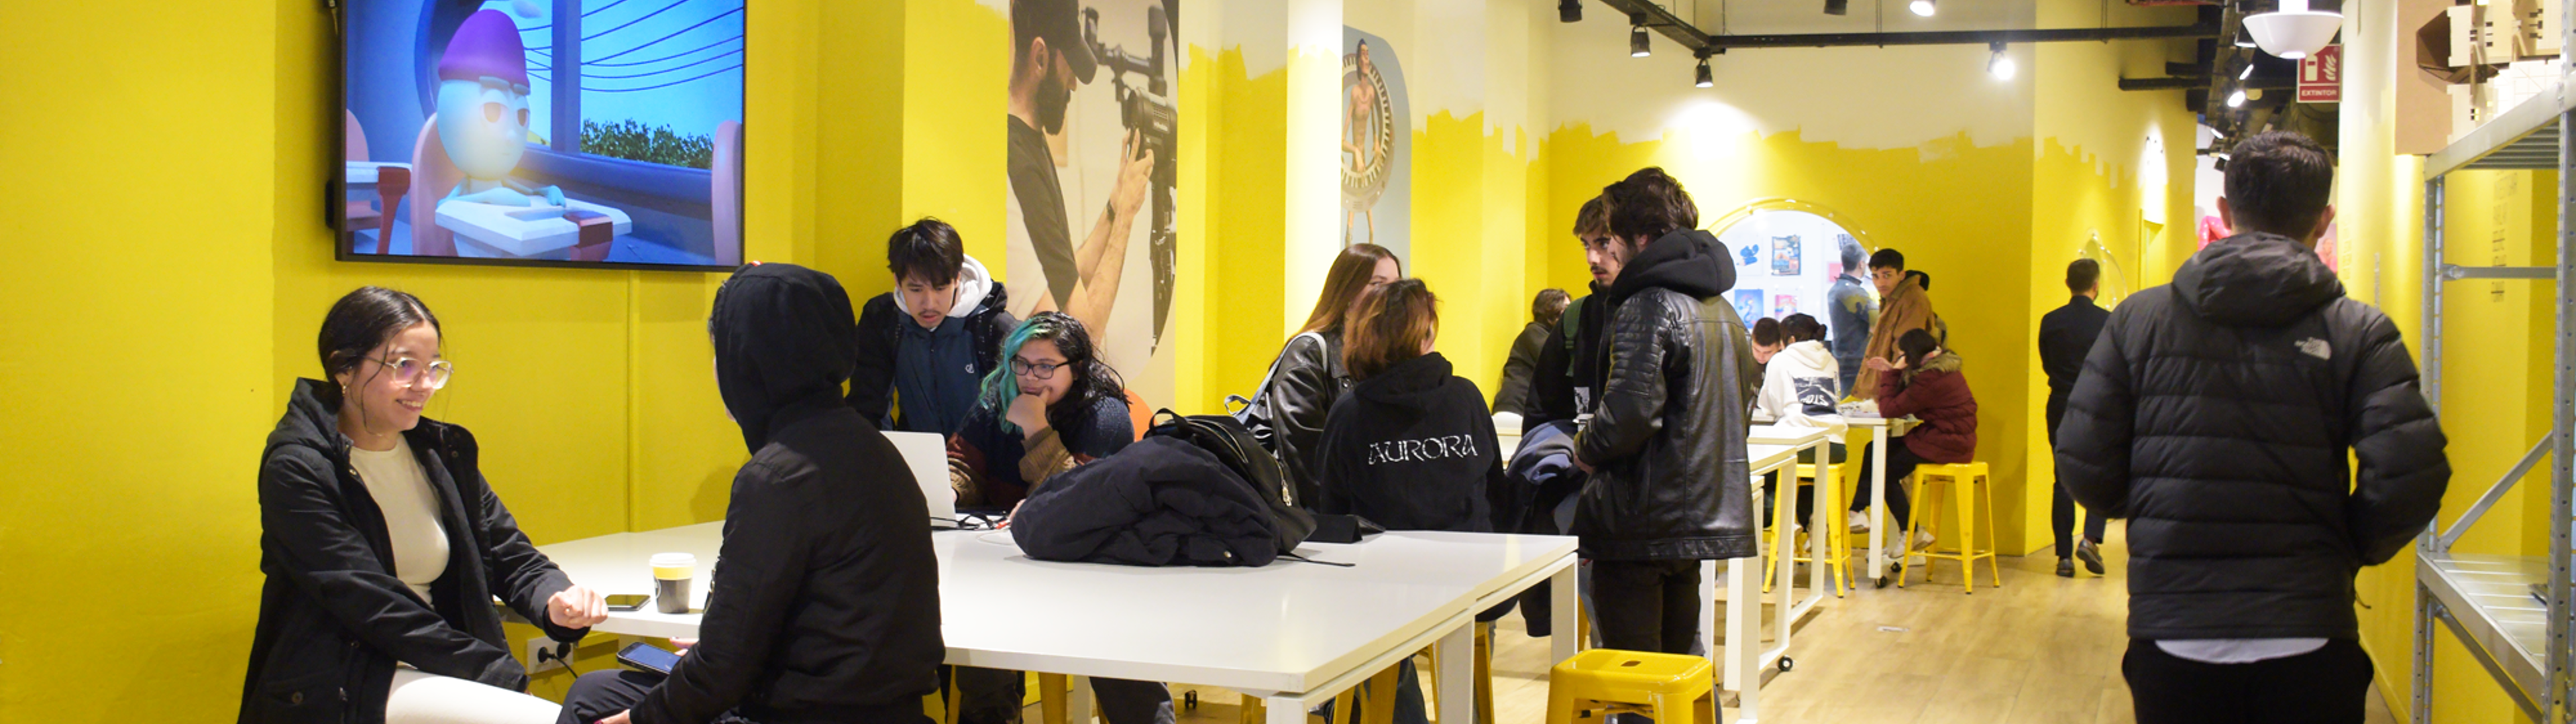 Individuos colaboran y socializan en un espacio de trabajo brillante y contemporáneo con acentos amarillos.